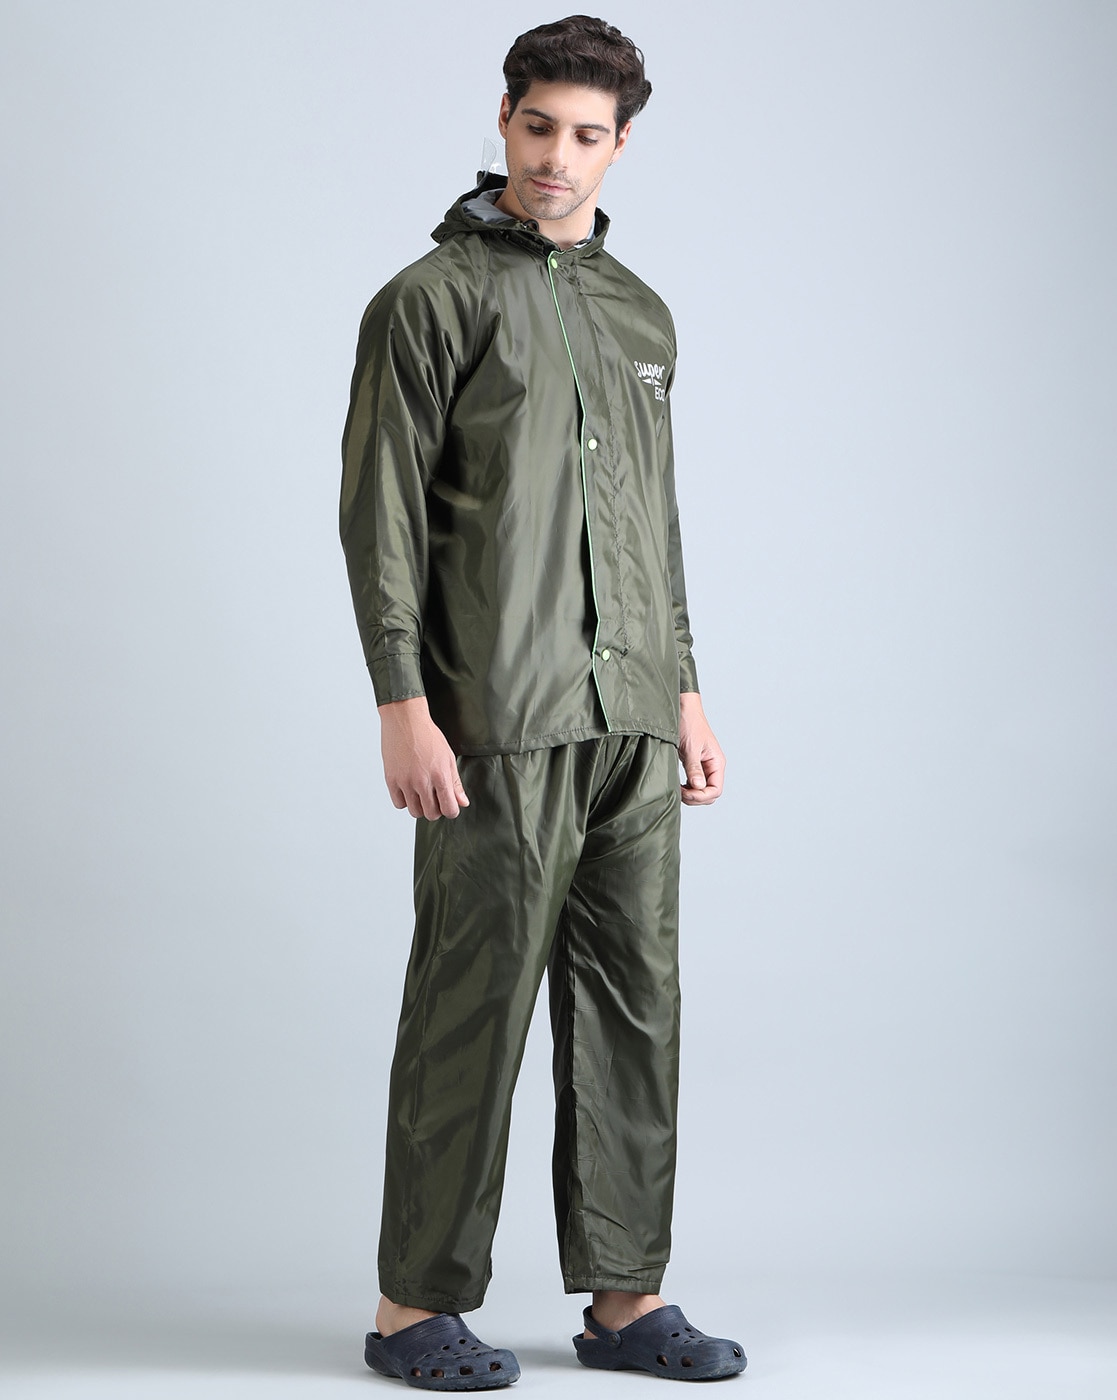 Buy Green Rainwear and Windcheaters for Men by SUPER Online  Ajiocom